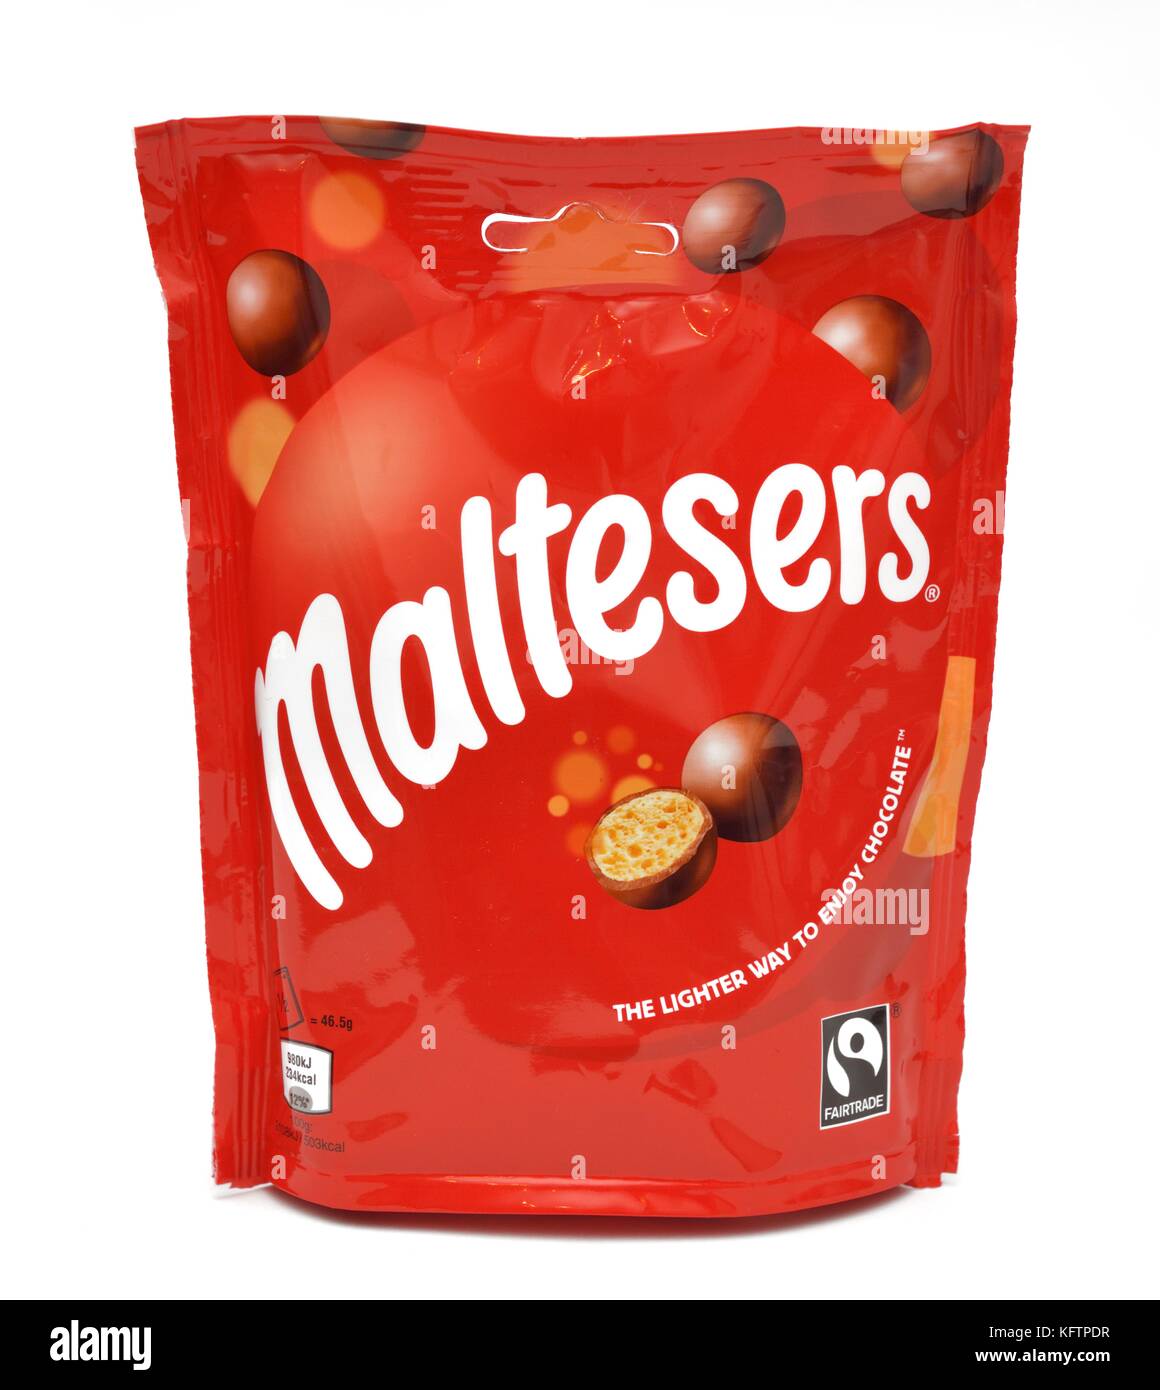 Maltesers 93 g Bag